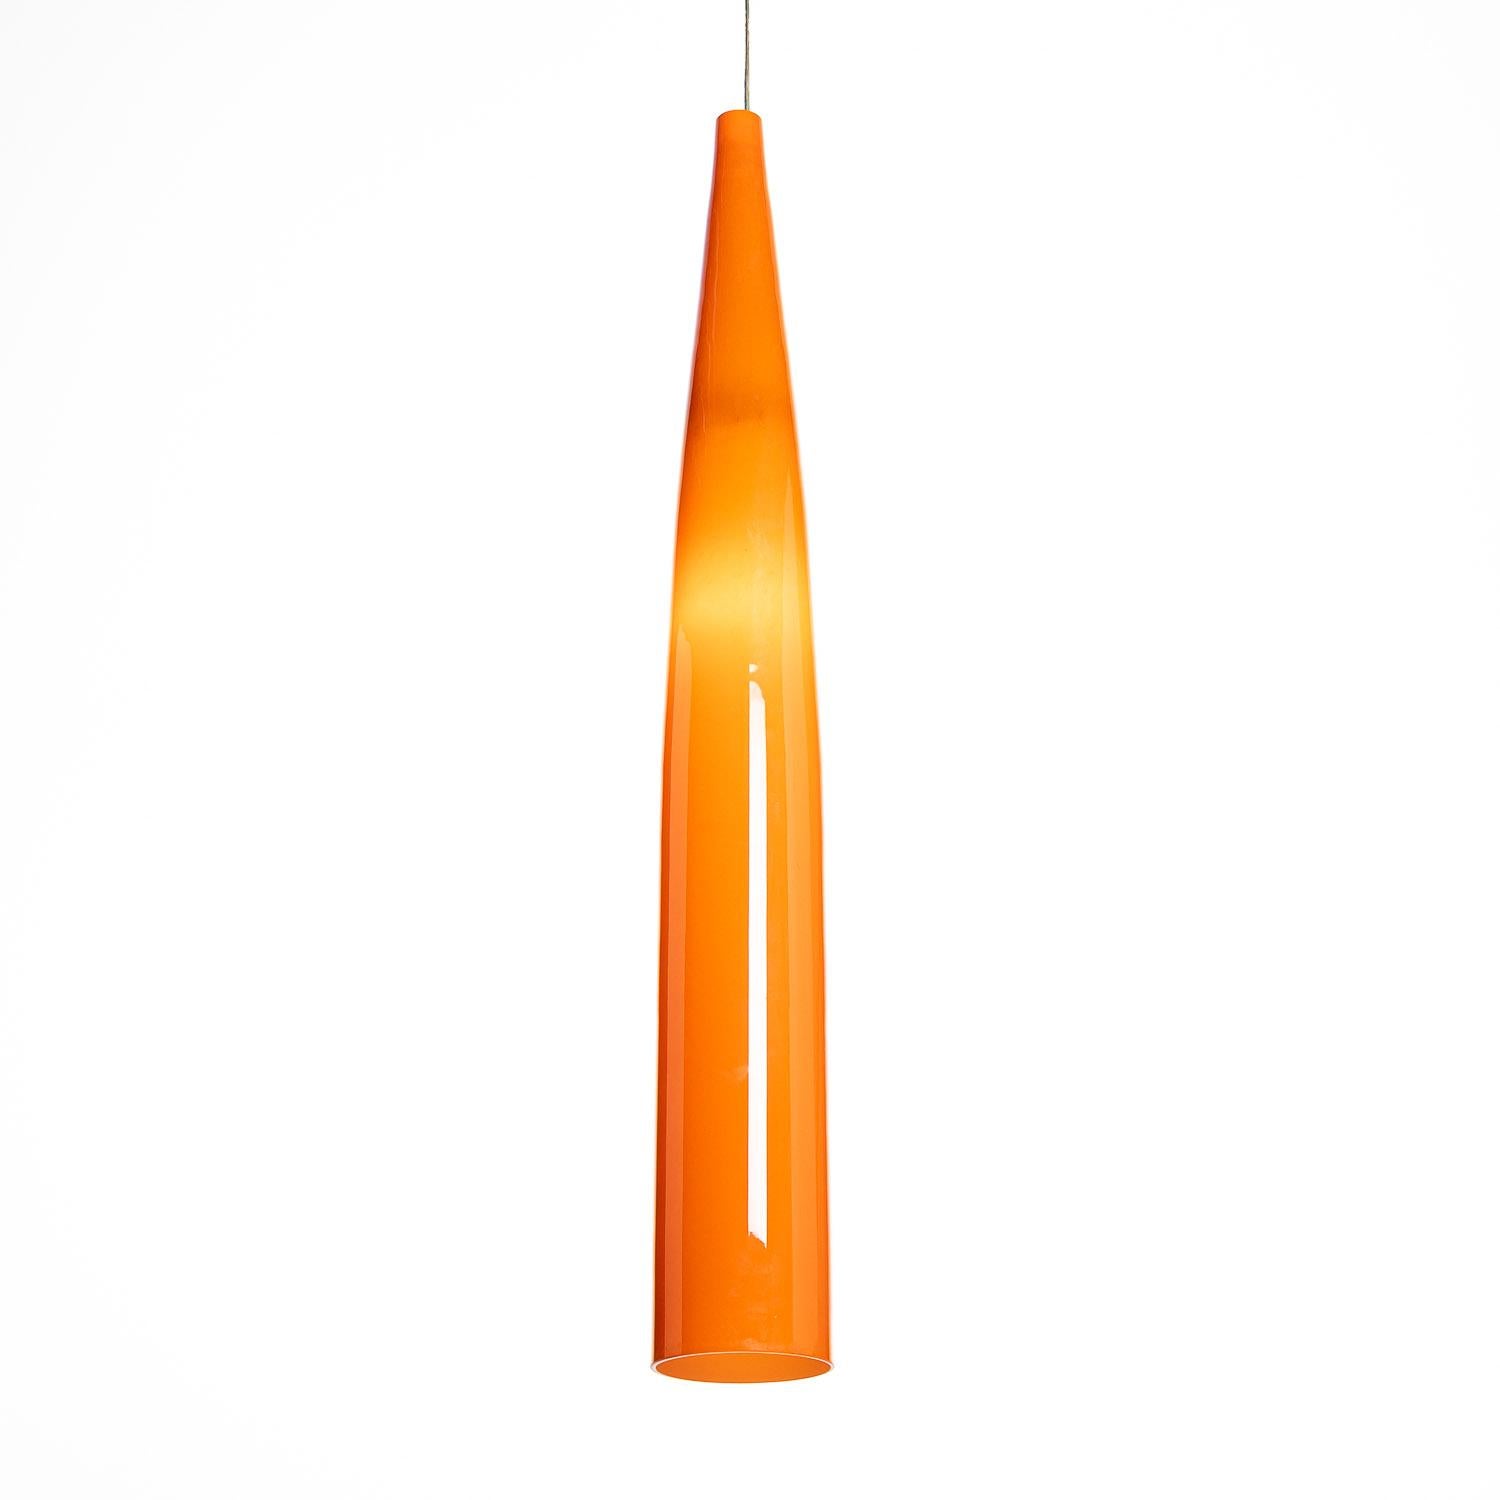 Quelle lumière ! Ce pendentif en verre orange avec intérieur opalin crée une lumière étonnante semblable à celle d'un coucher de soleil. L'ampoule transforme l'orange en un ton plus jaune. À l'œil, la lueur est plus longue que sur les photos.


 